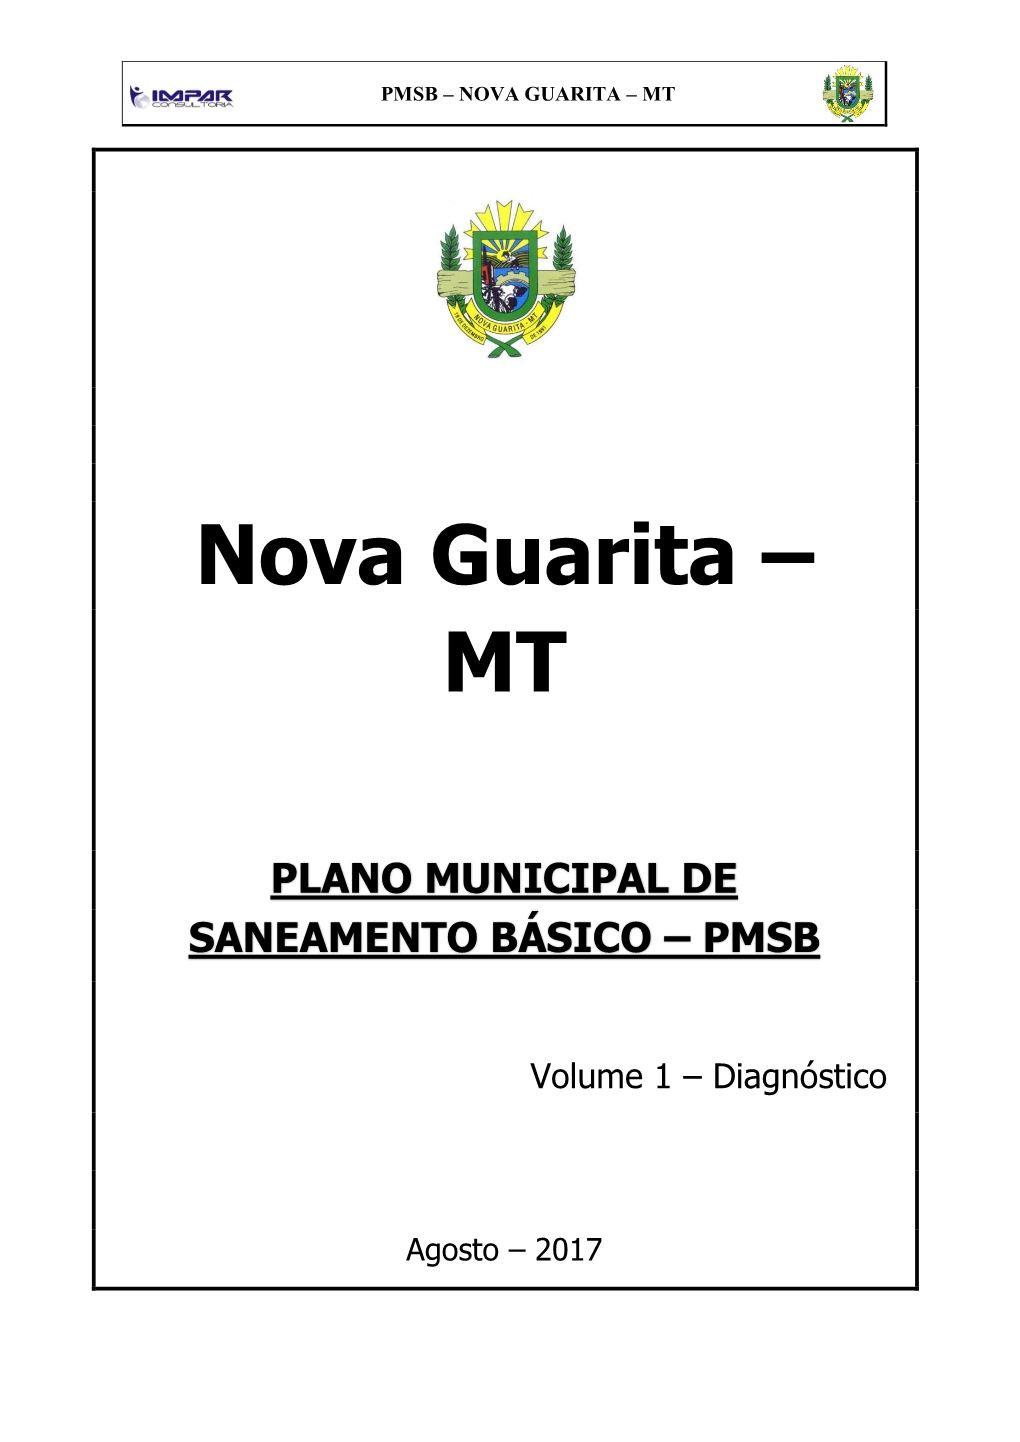 Nova Guarita – Mt